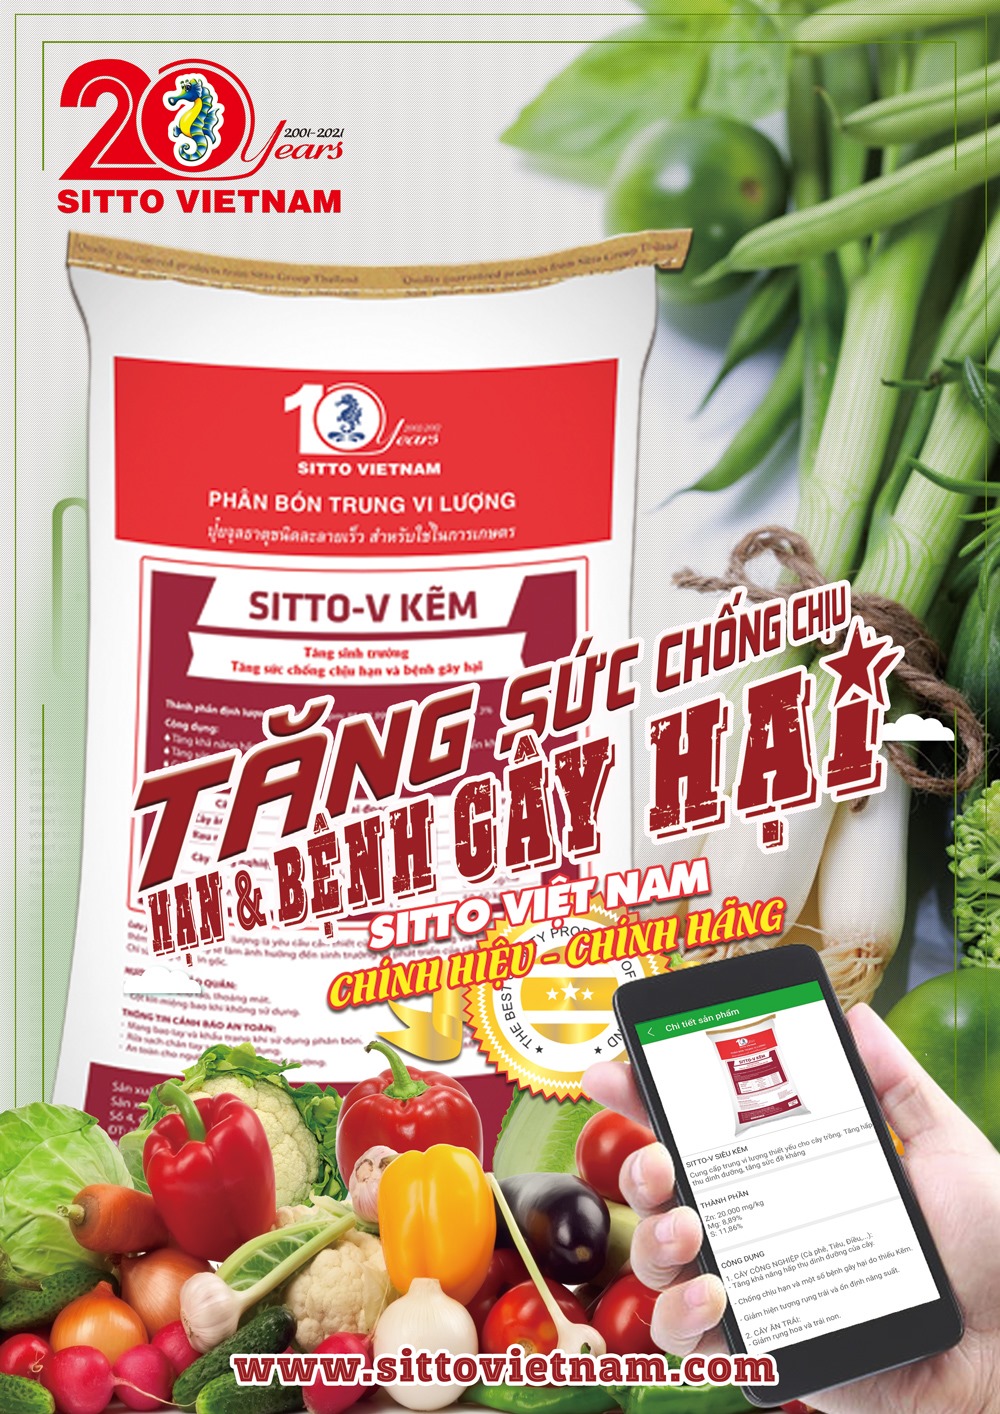 Sitto- V Kẽm (Bao 10kg) - Bổ sung vi lượng thiết yếu cho cây trồng